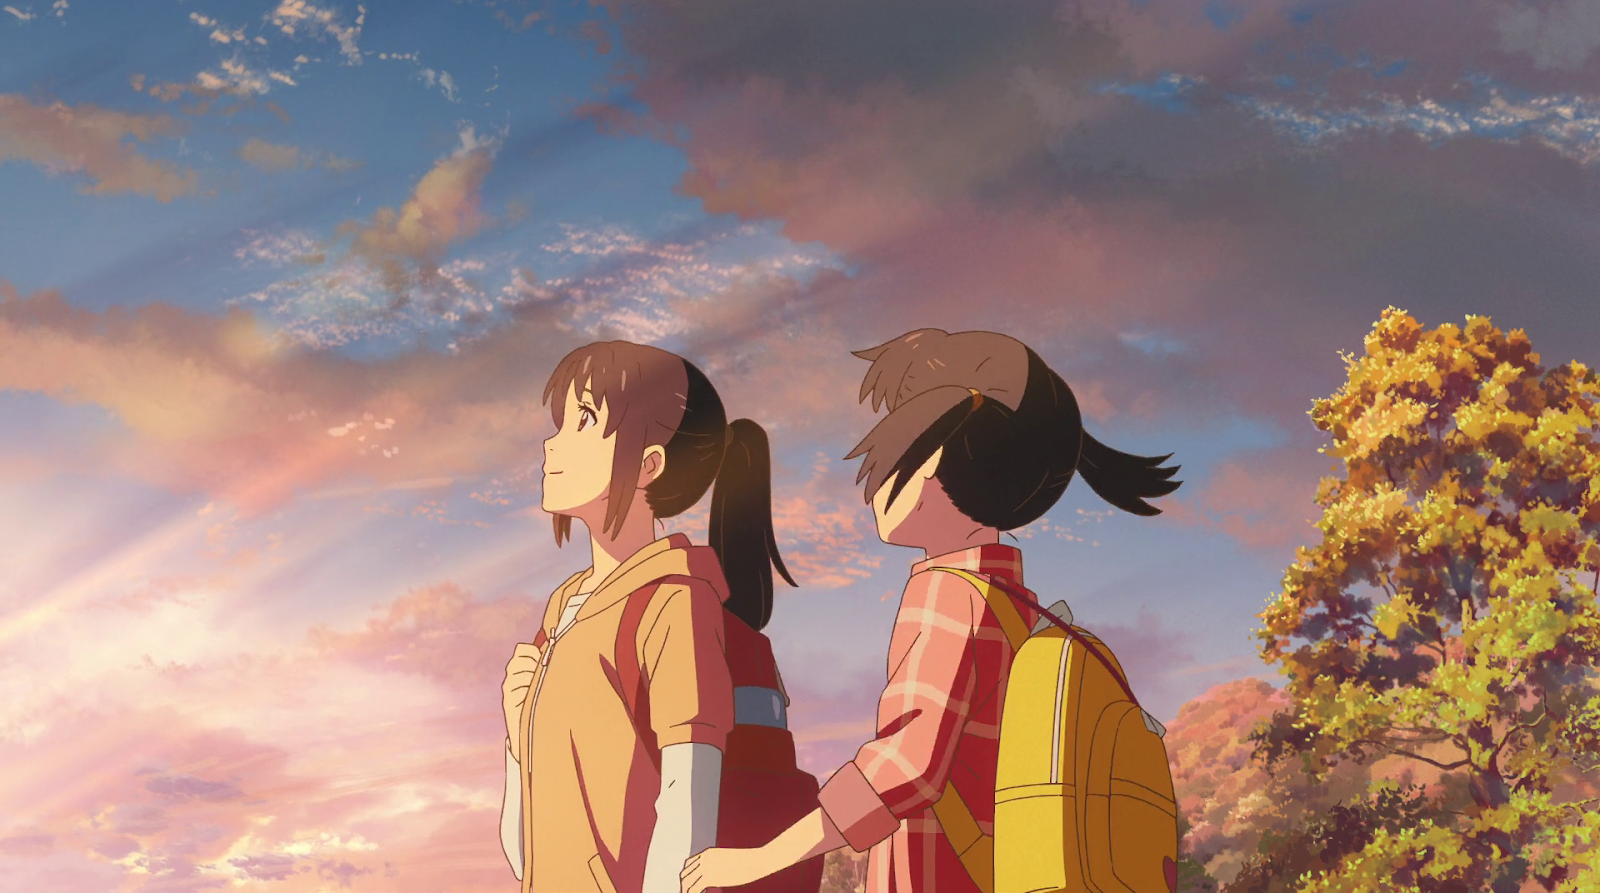 Um Filme Me Disse - Filme: Your Name Direção: Makoto Shinkai Ano